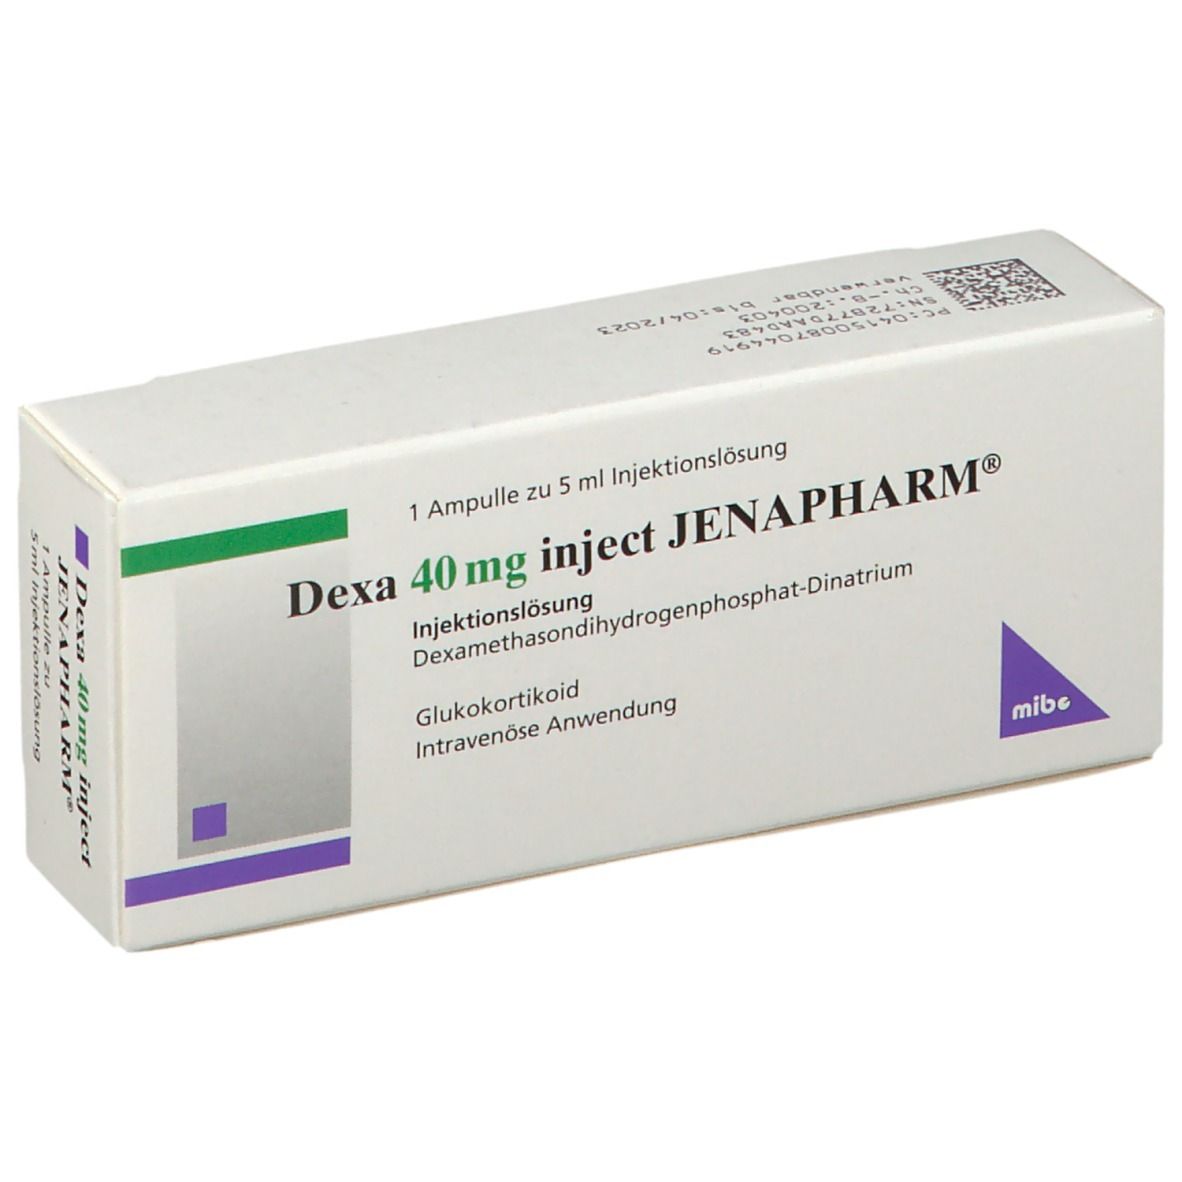 Dexa 40 mg